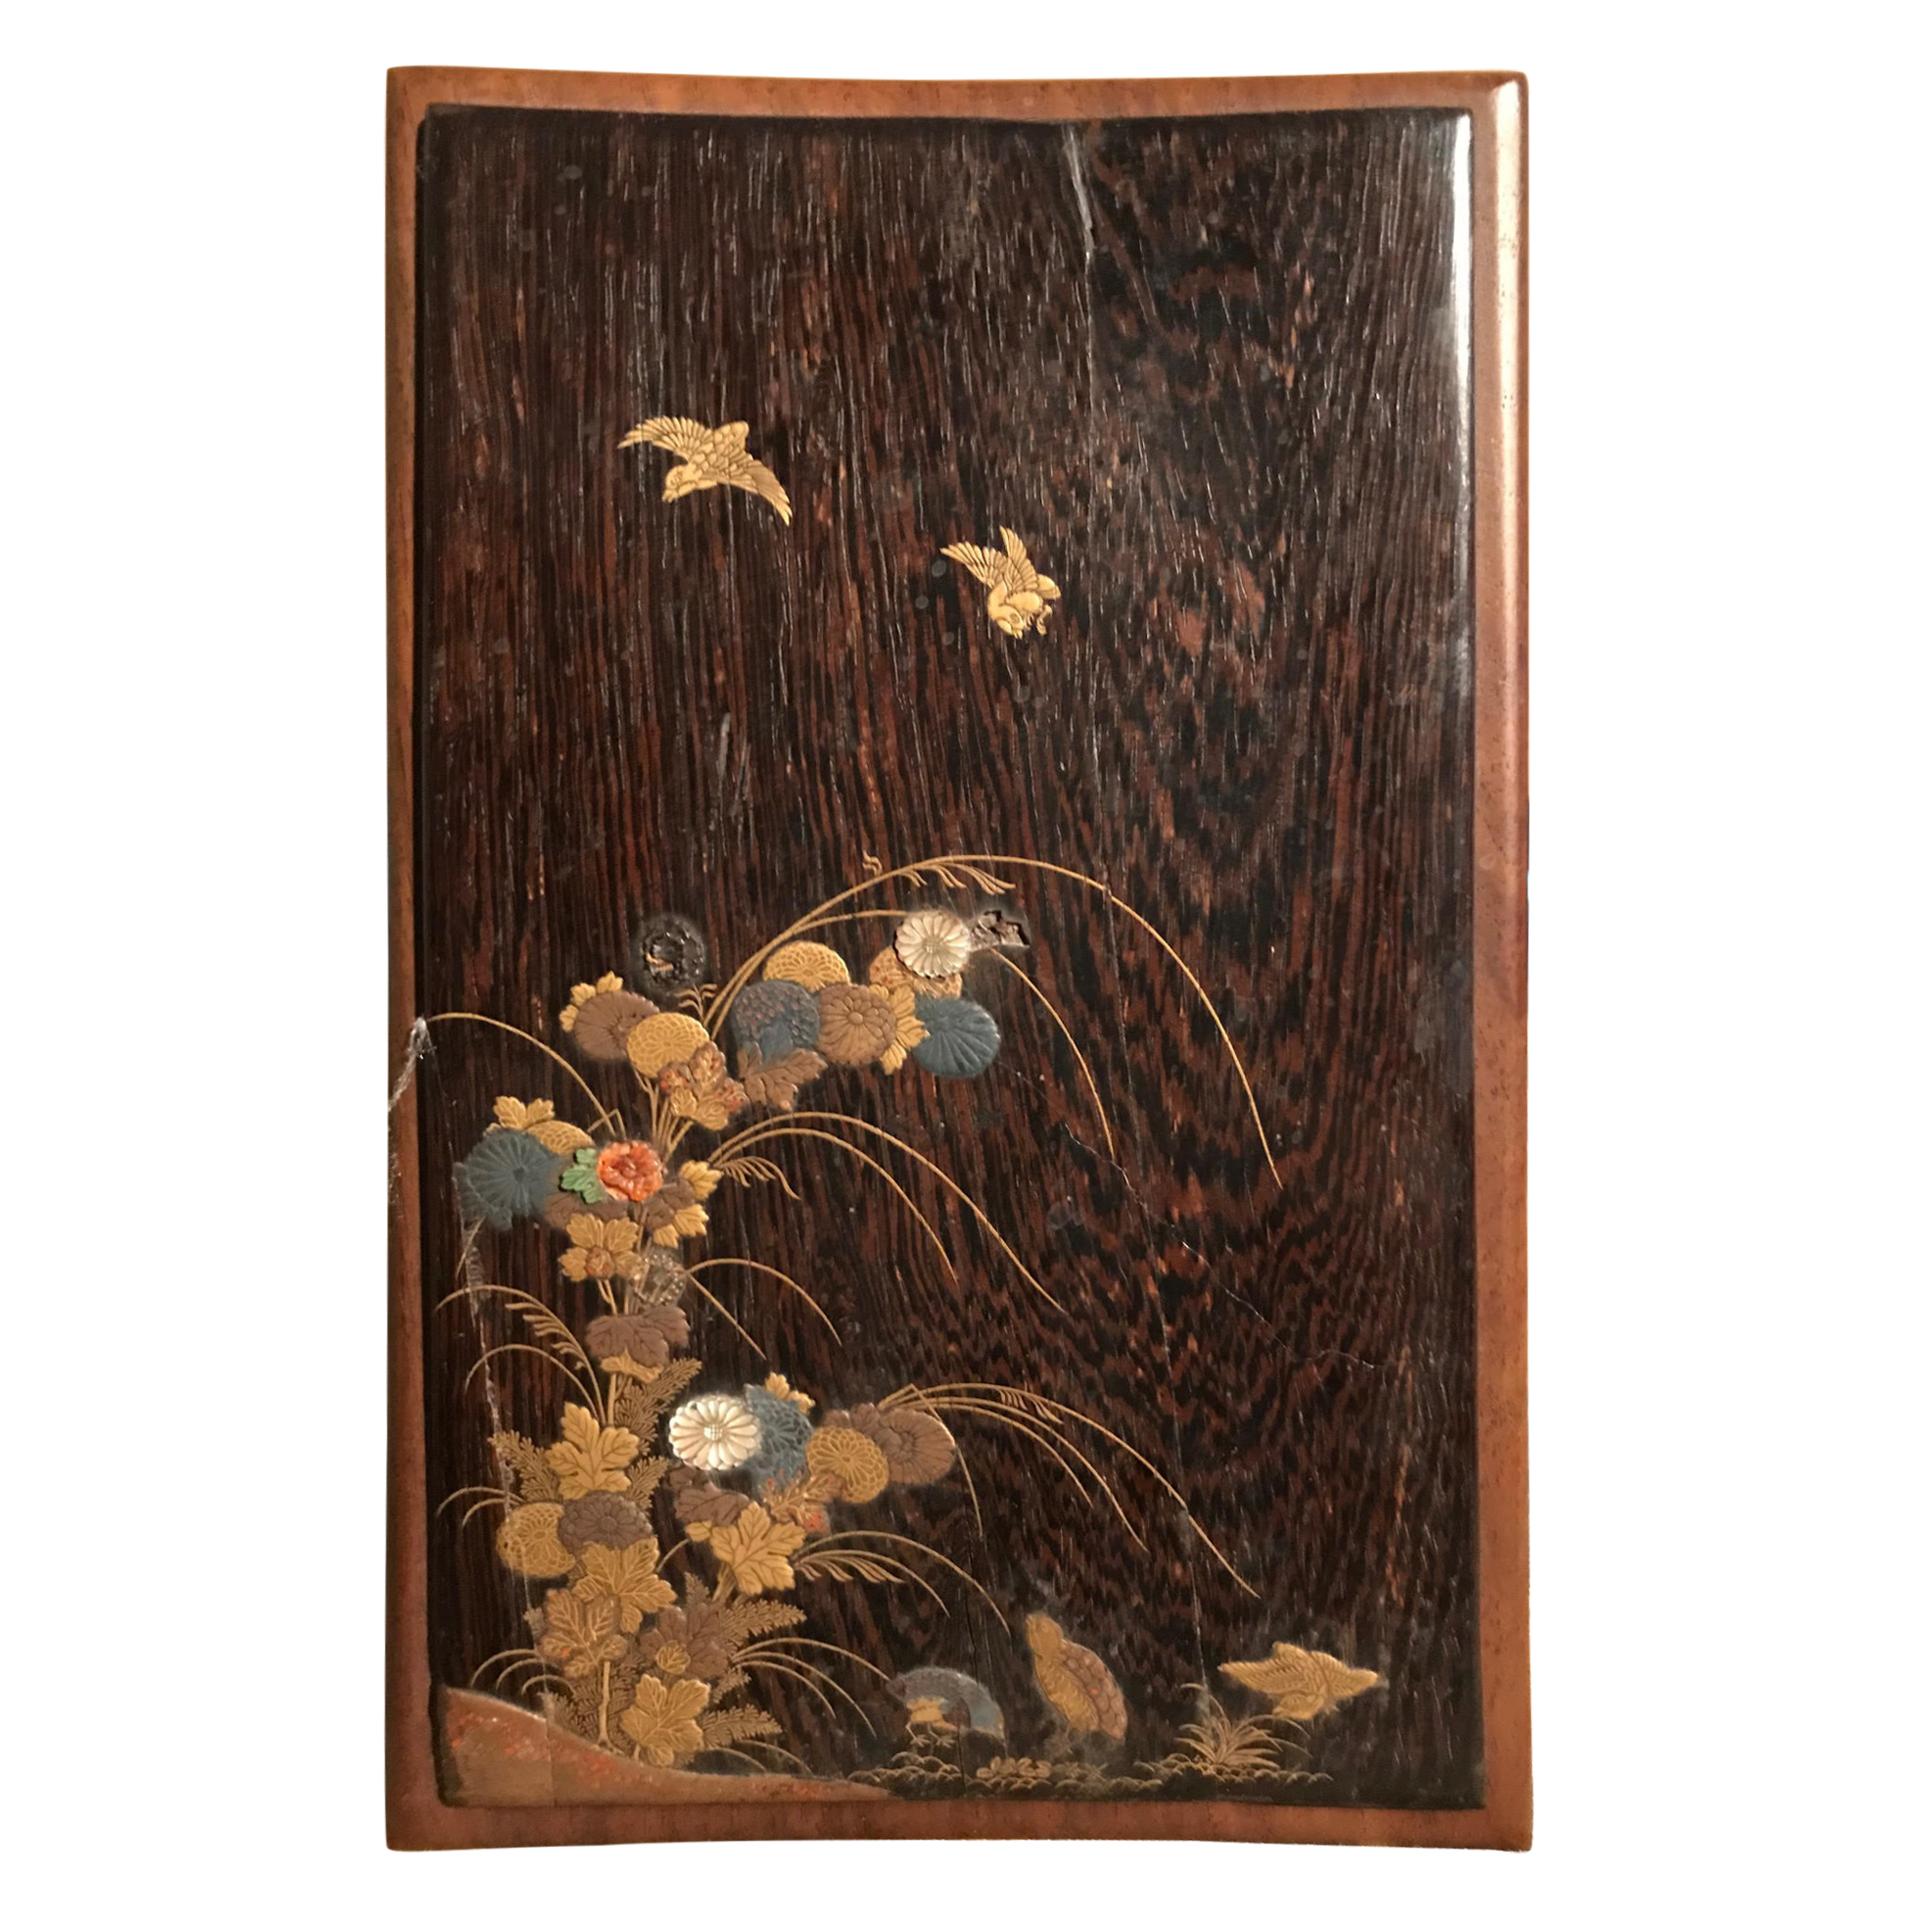 Japanisches Lackpaneel aus der japanischen Edo-Periode mit Gold-, Perlmutt- und Korallenintarsienarbeit